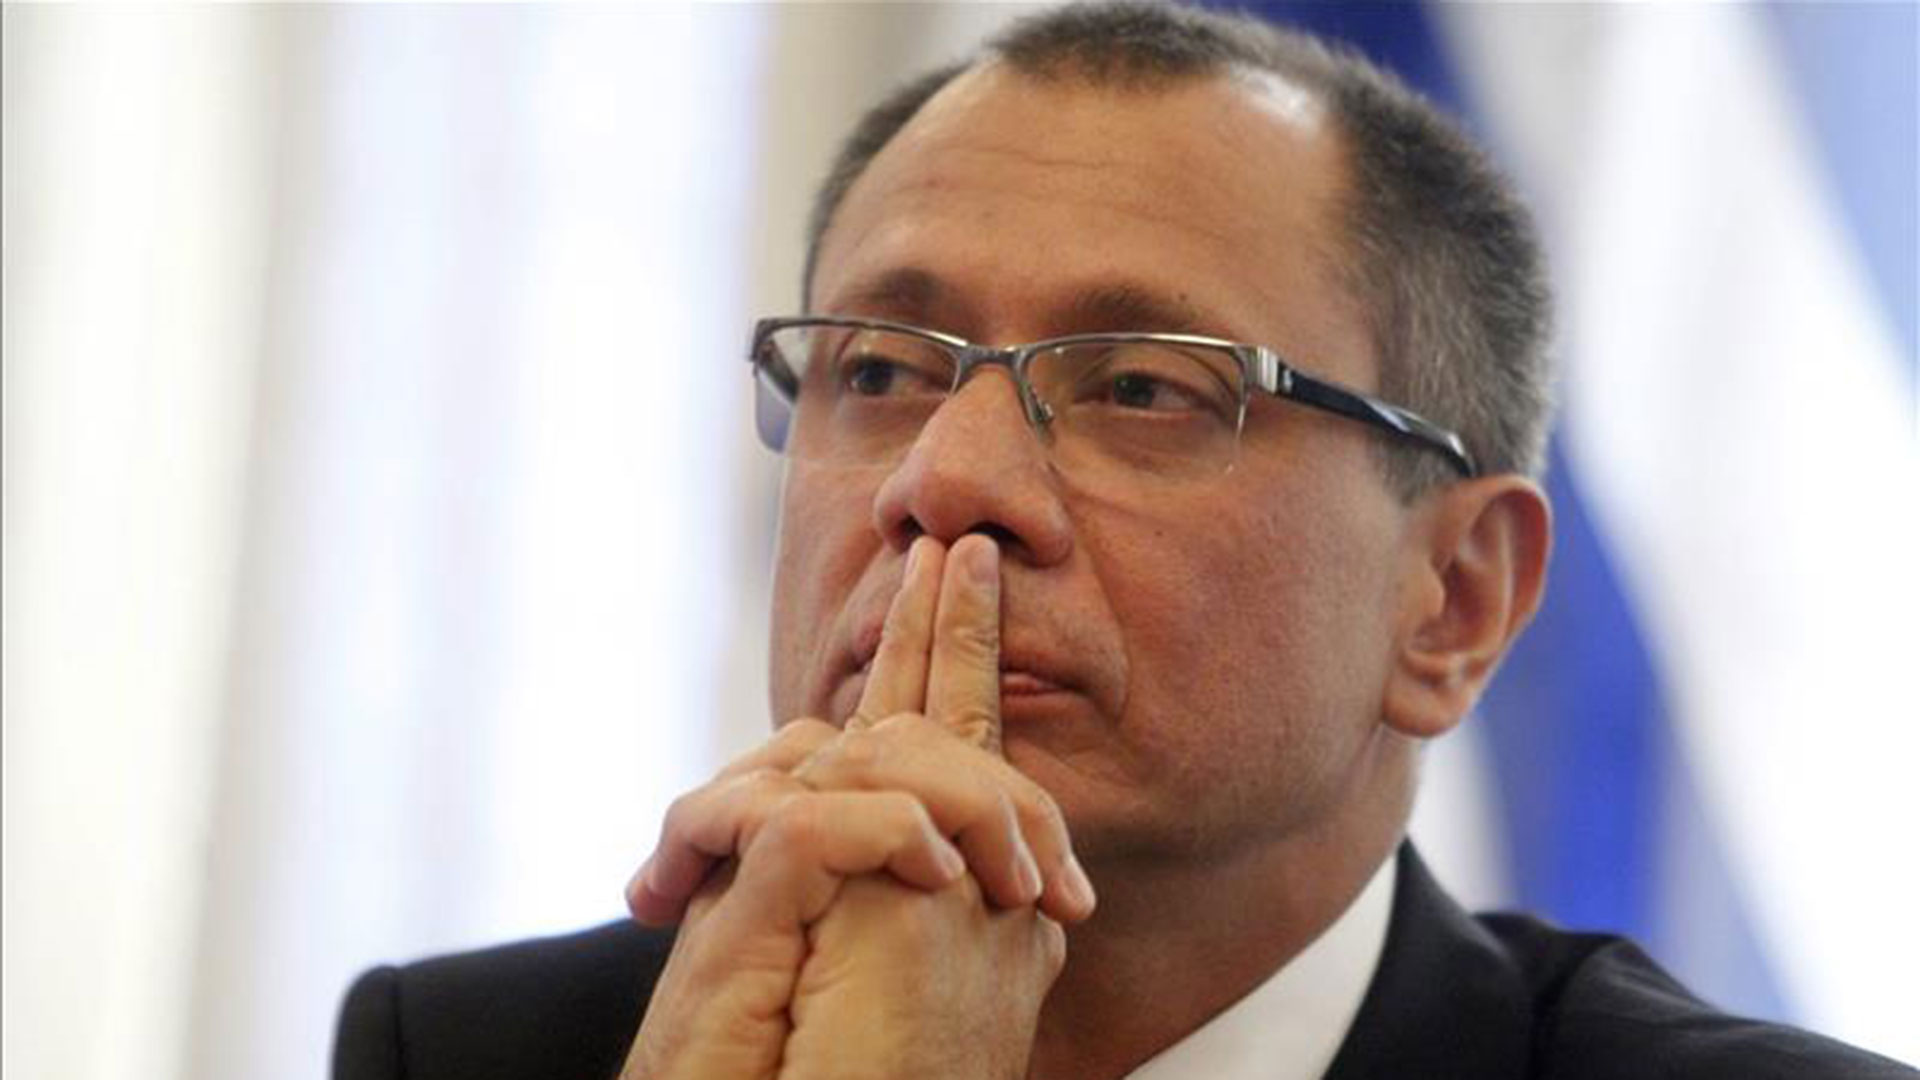 El ex vicepresidente de Ecuador Jorge Glas no será excarcelado